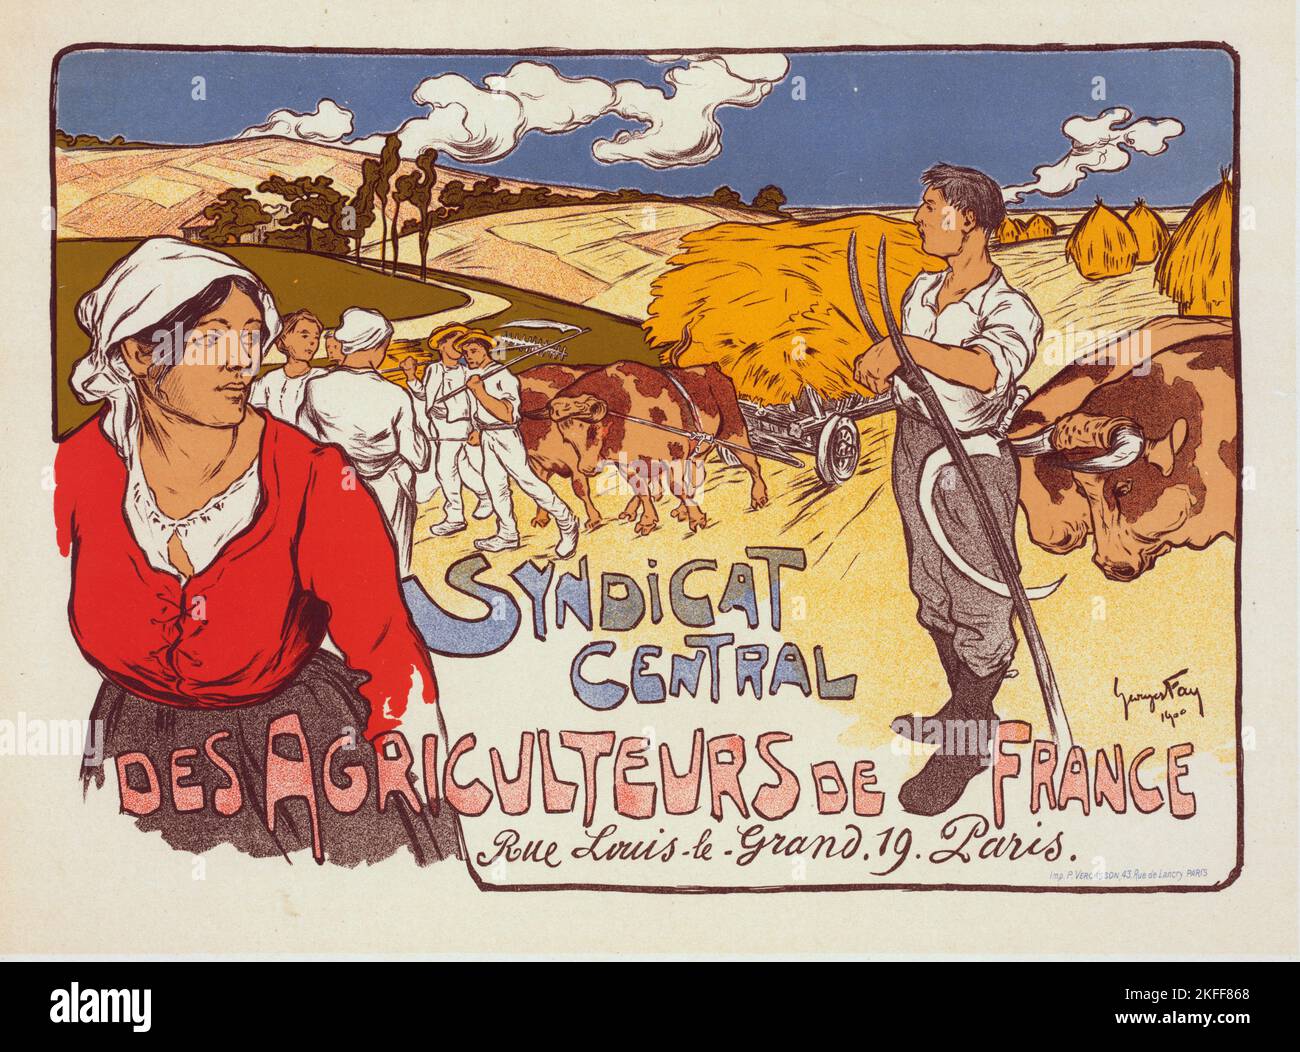 Affiche pour le "Syndicat Central des Agriculteurs de France", c1900. [Herausgeber: Imprimerie Chaix; Ort: Paris] Stockfoto